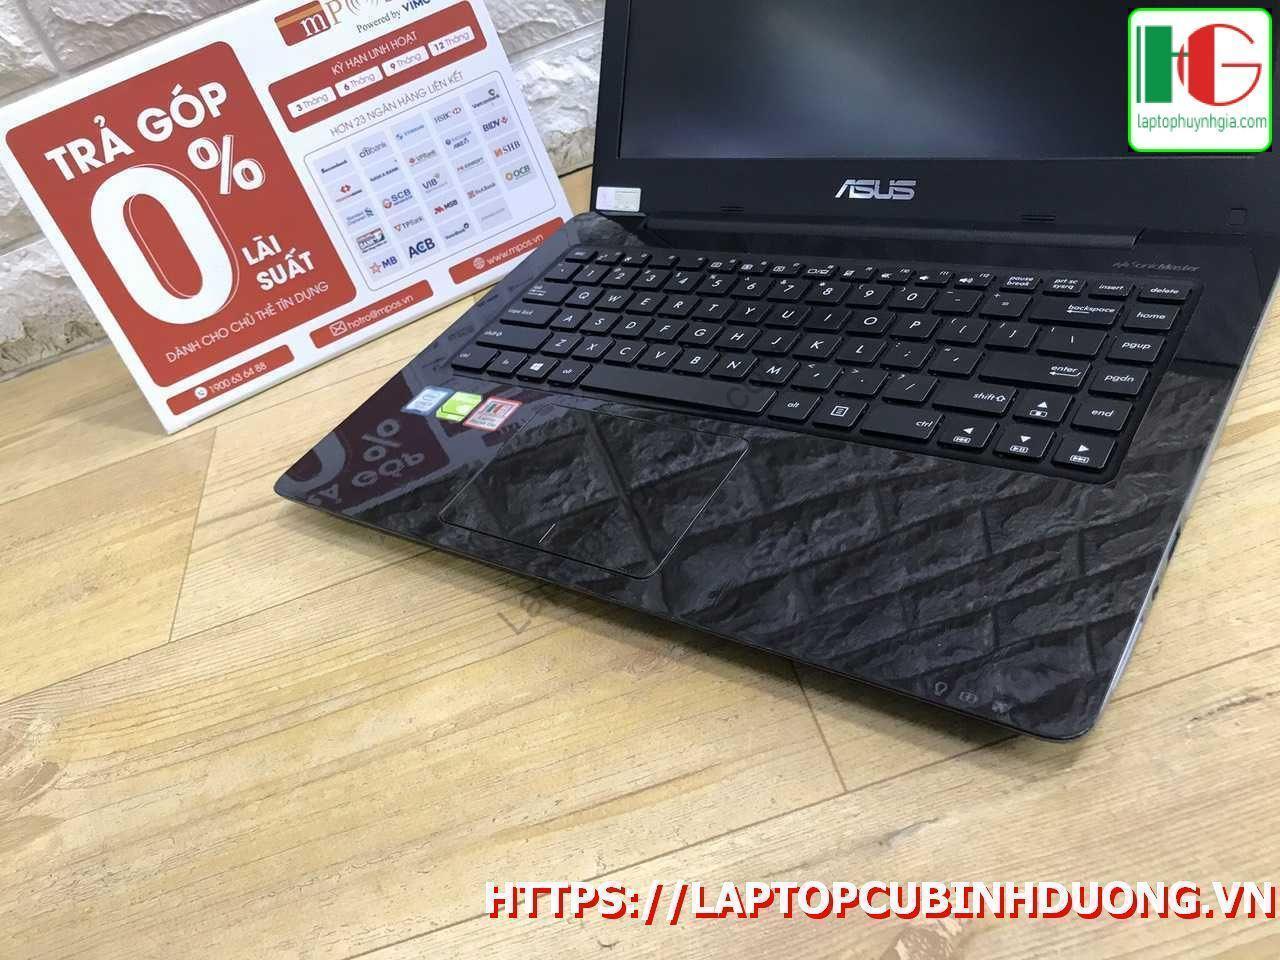 Laptop Asus X456 I5 7200u 4g Ssd 128g Nvidia Gt930mx Laptopcubinhduong.vn 2 [kích Thước Gốc] Result